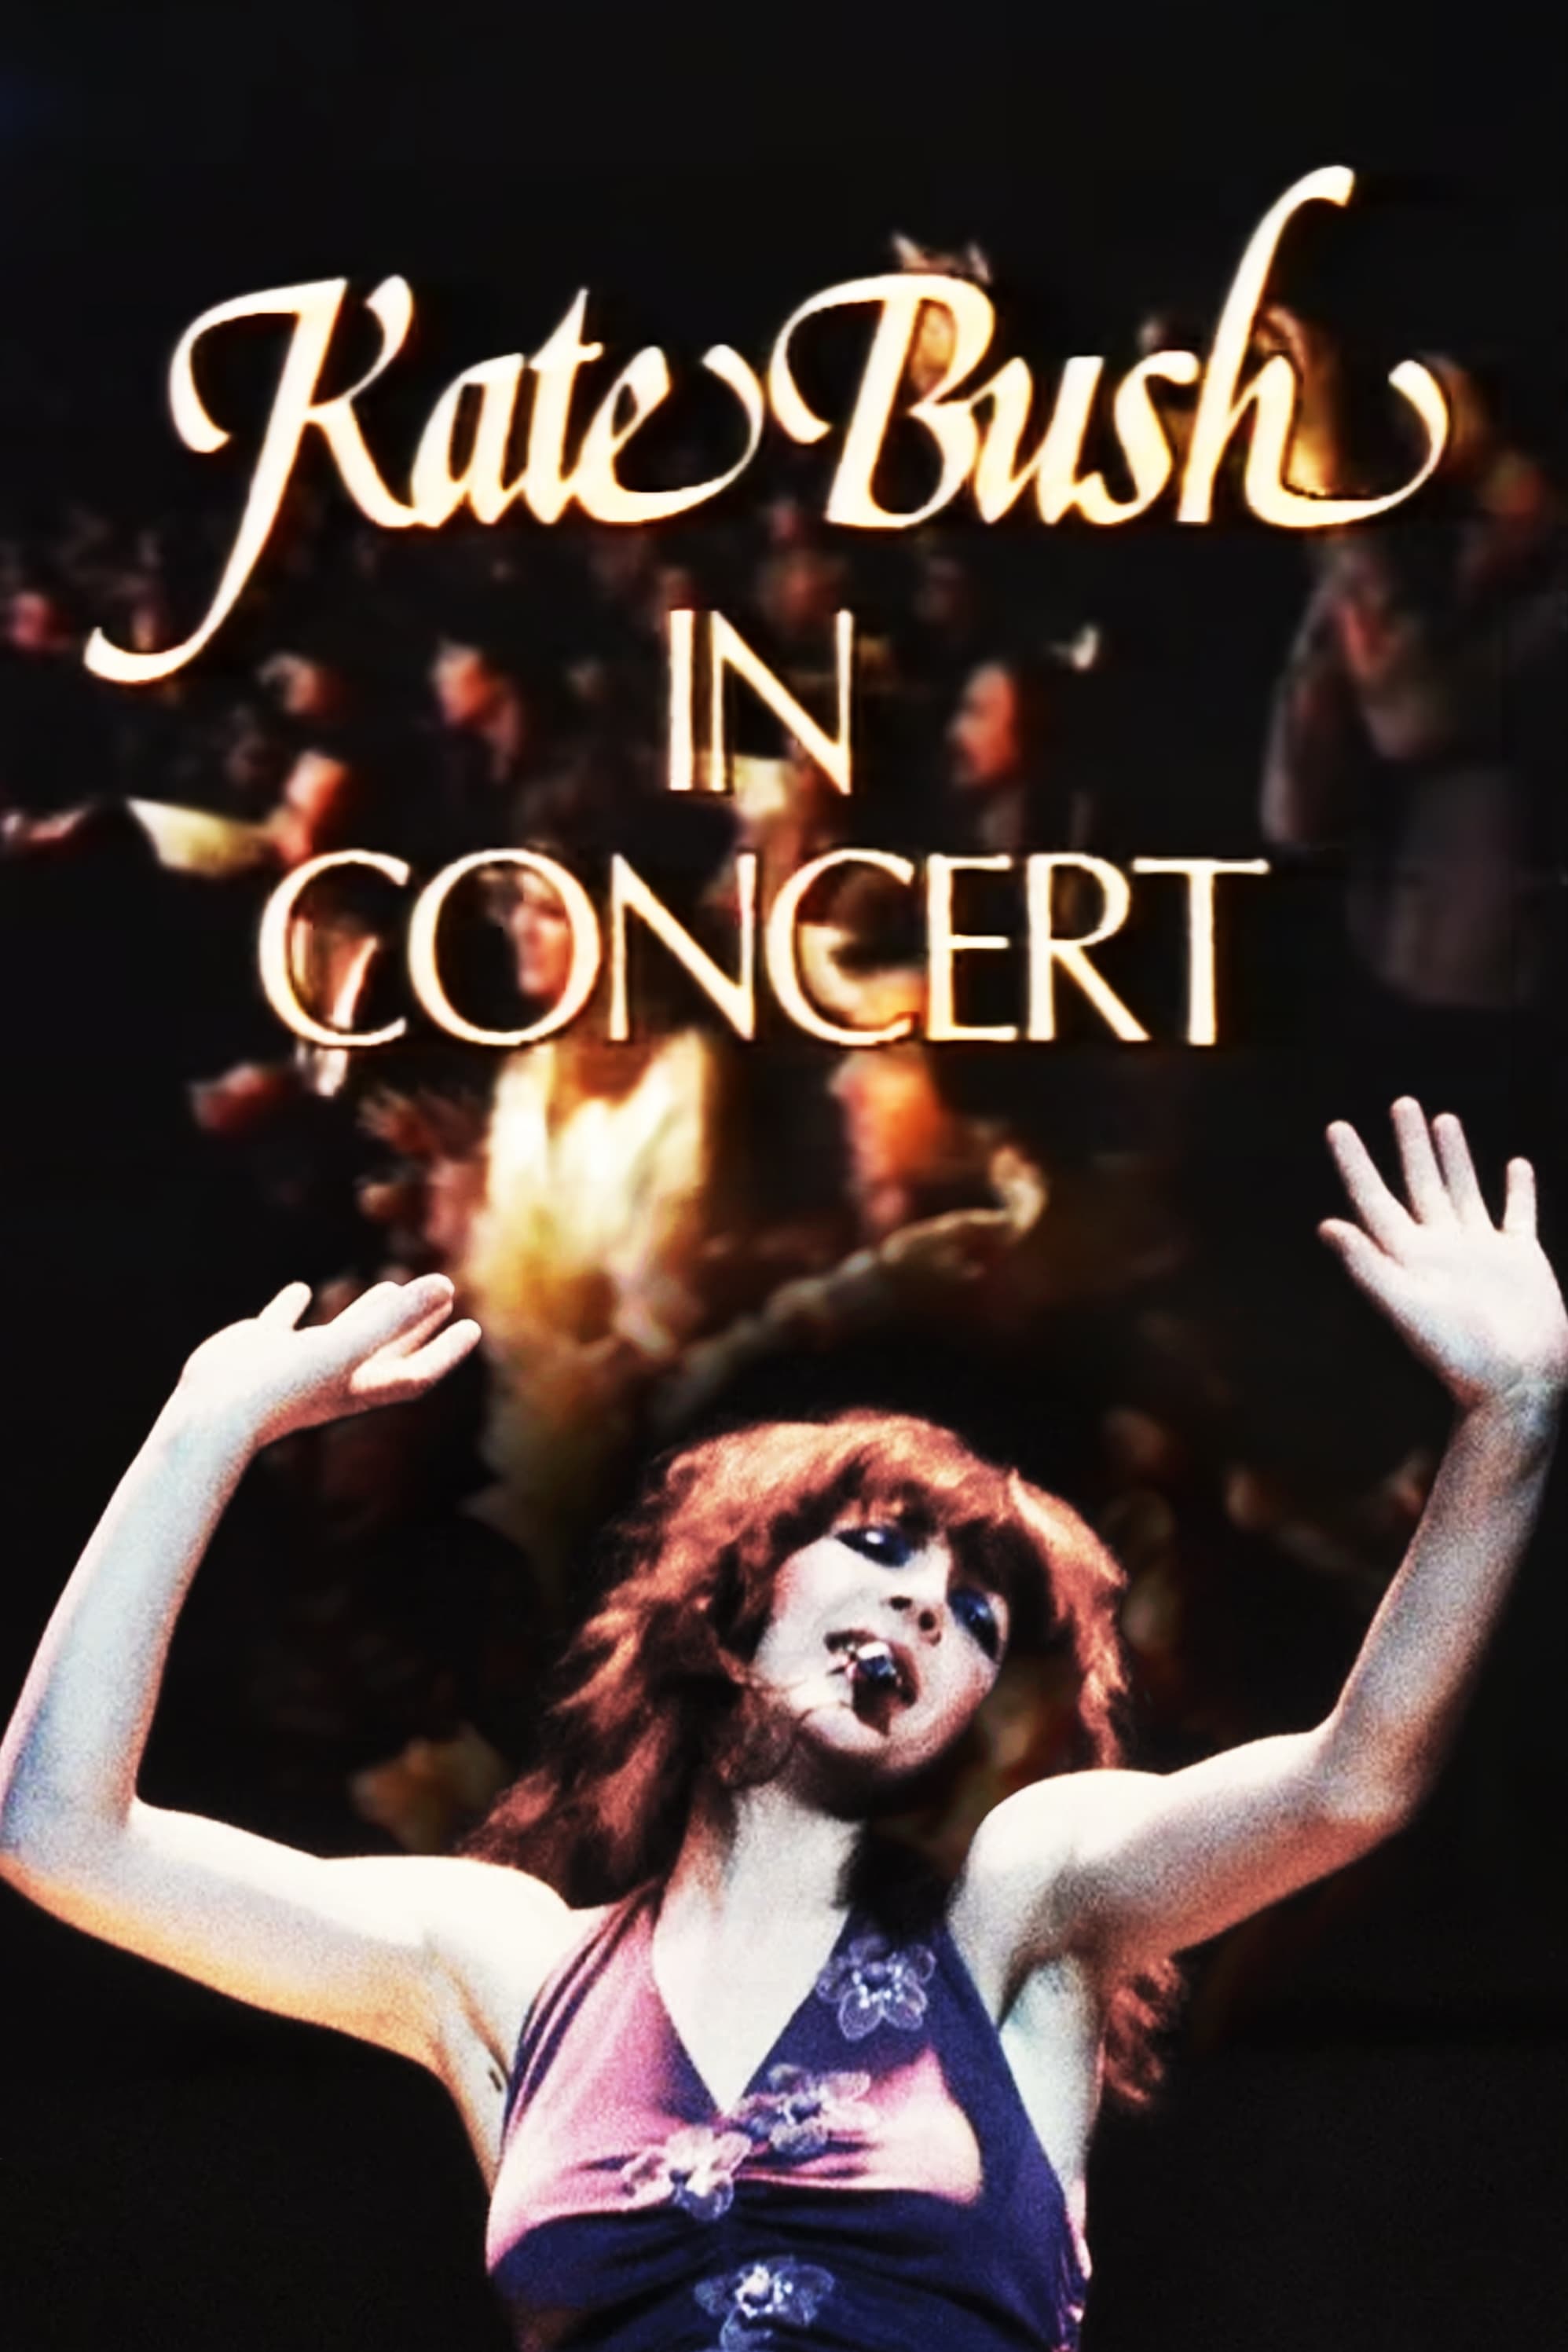 Kate Bush In Concert